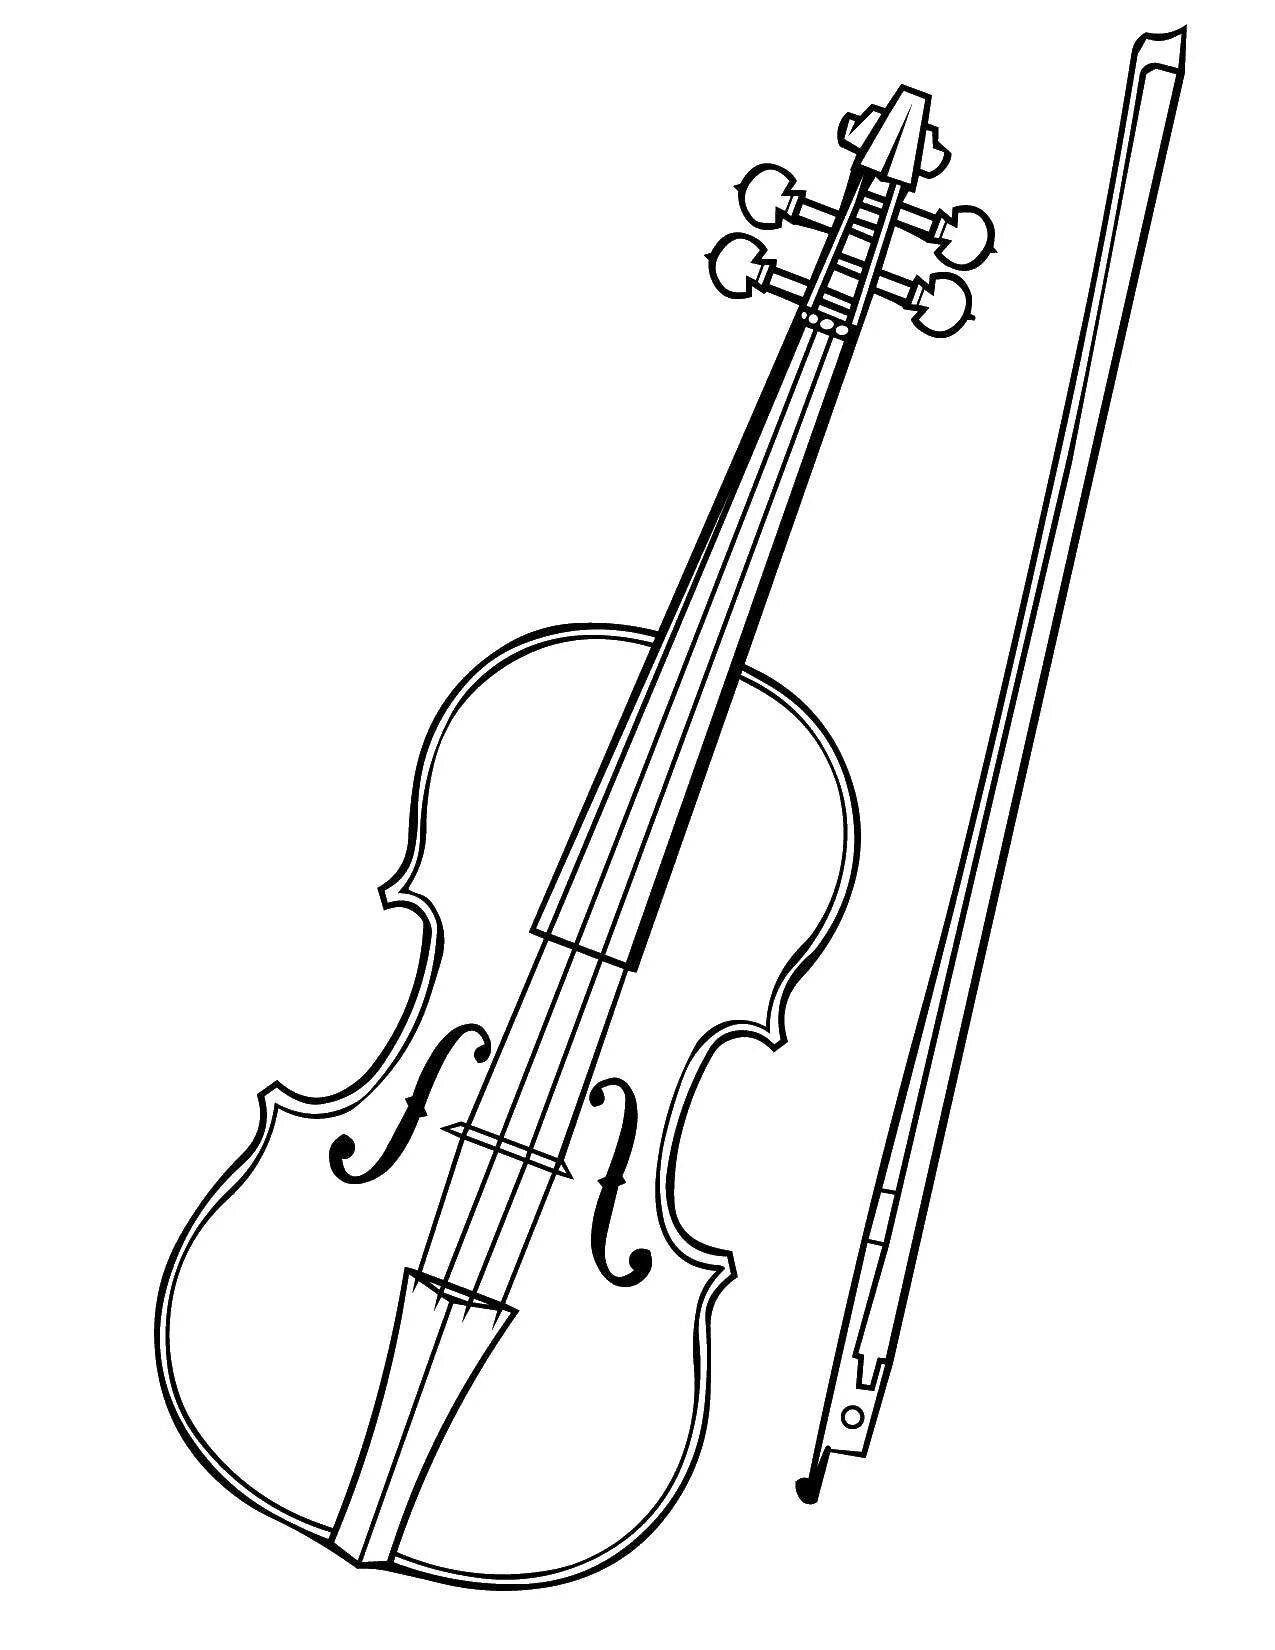 Violin and cello #3